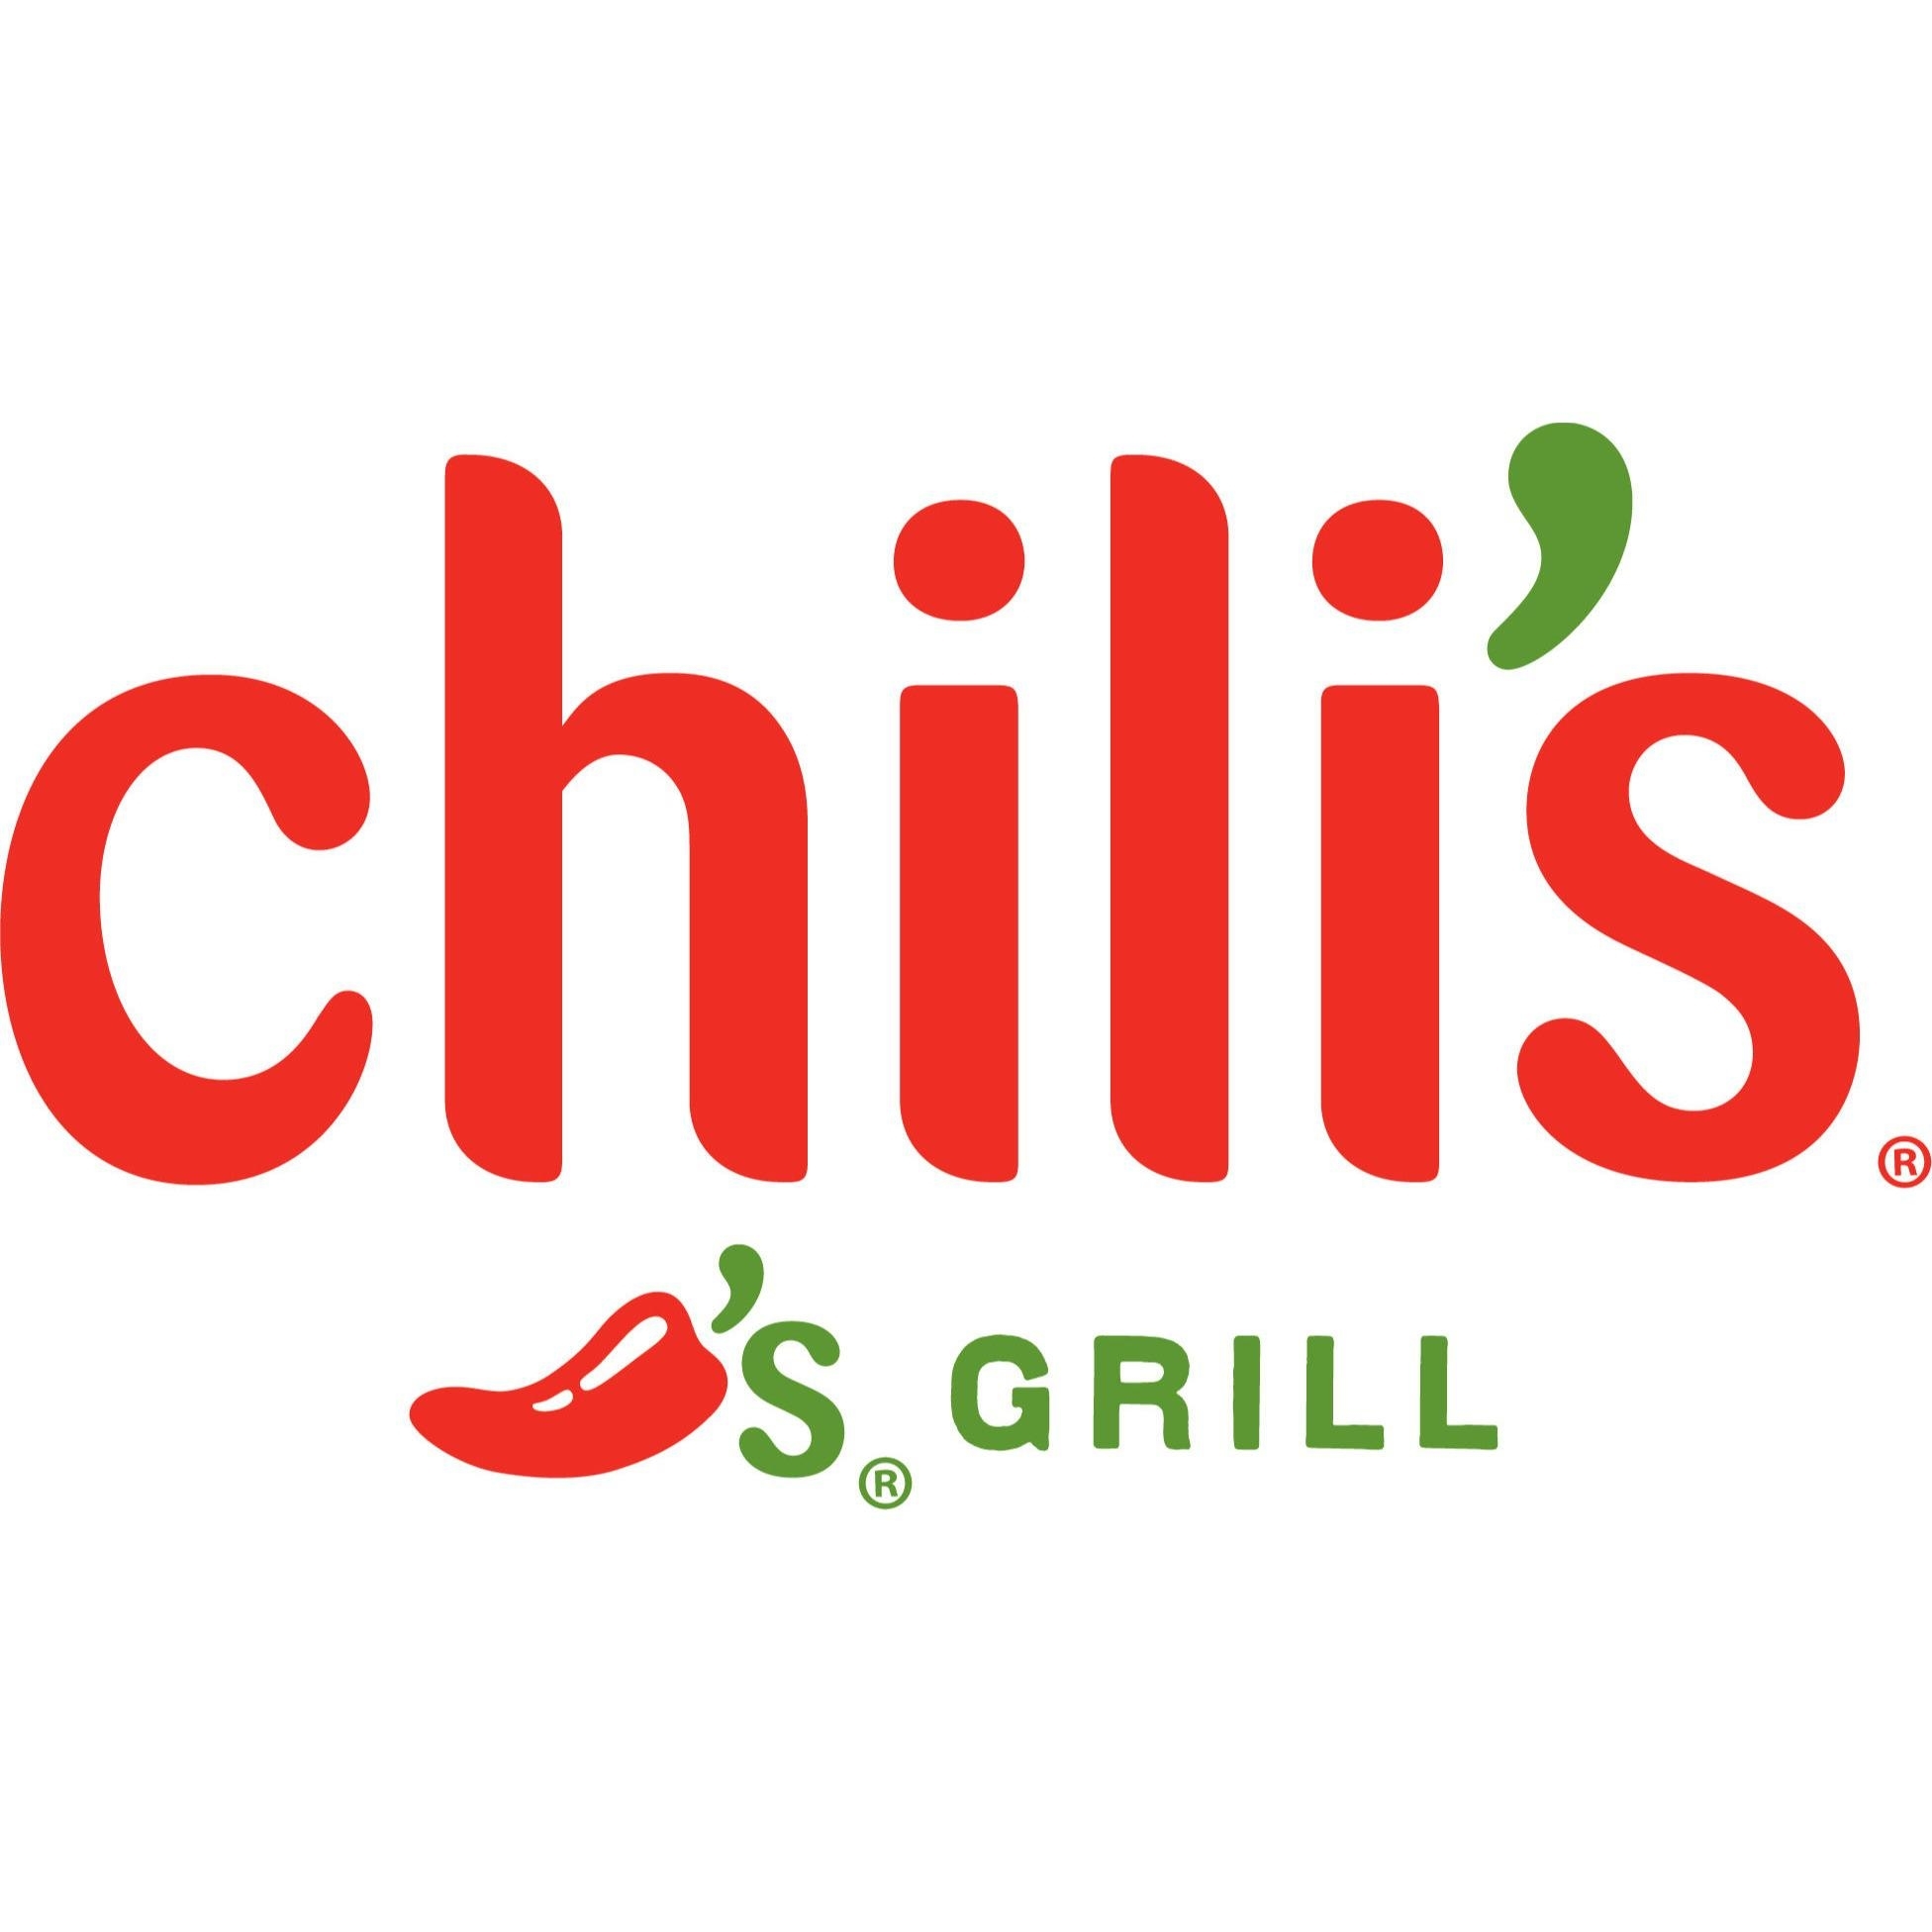 Chili's Grill - Restaurants